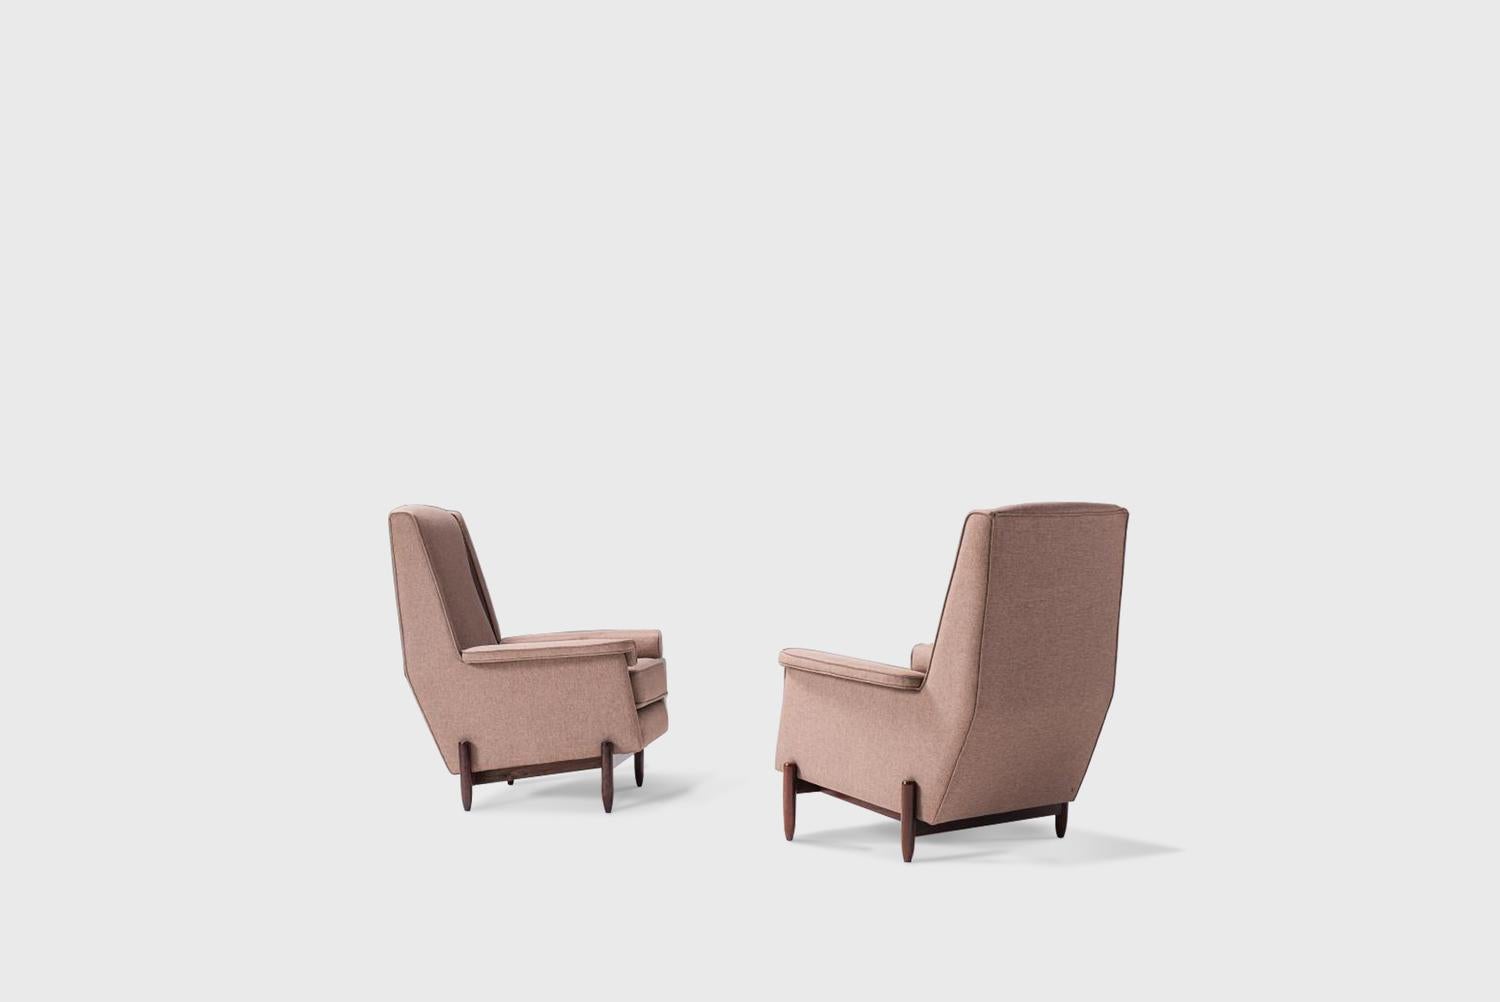 Paar Sessel, hergestellt von Móveis Cantu Brasilien, 1960er Jahre 
Strukturen aus massivem Jacaranda, gepolsterte Körper und Sitze mit grauem Stoff bezogen
Abmessungen: 74cmx 80cmx99hcm 29,2 in x 31,5 in x 39 h in